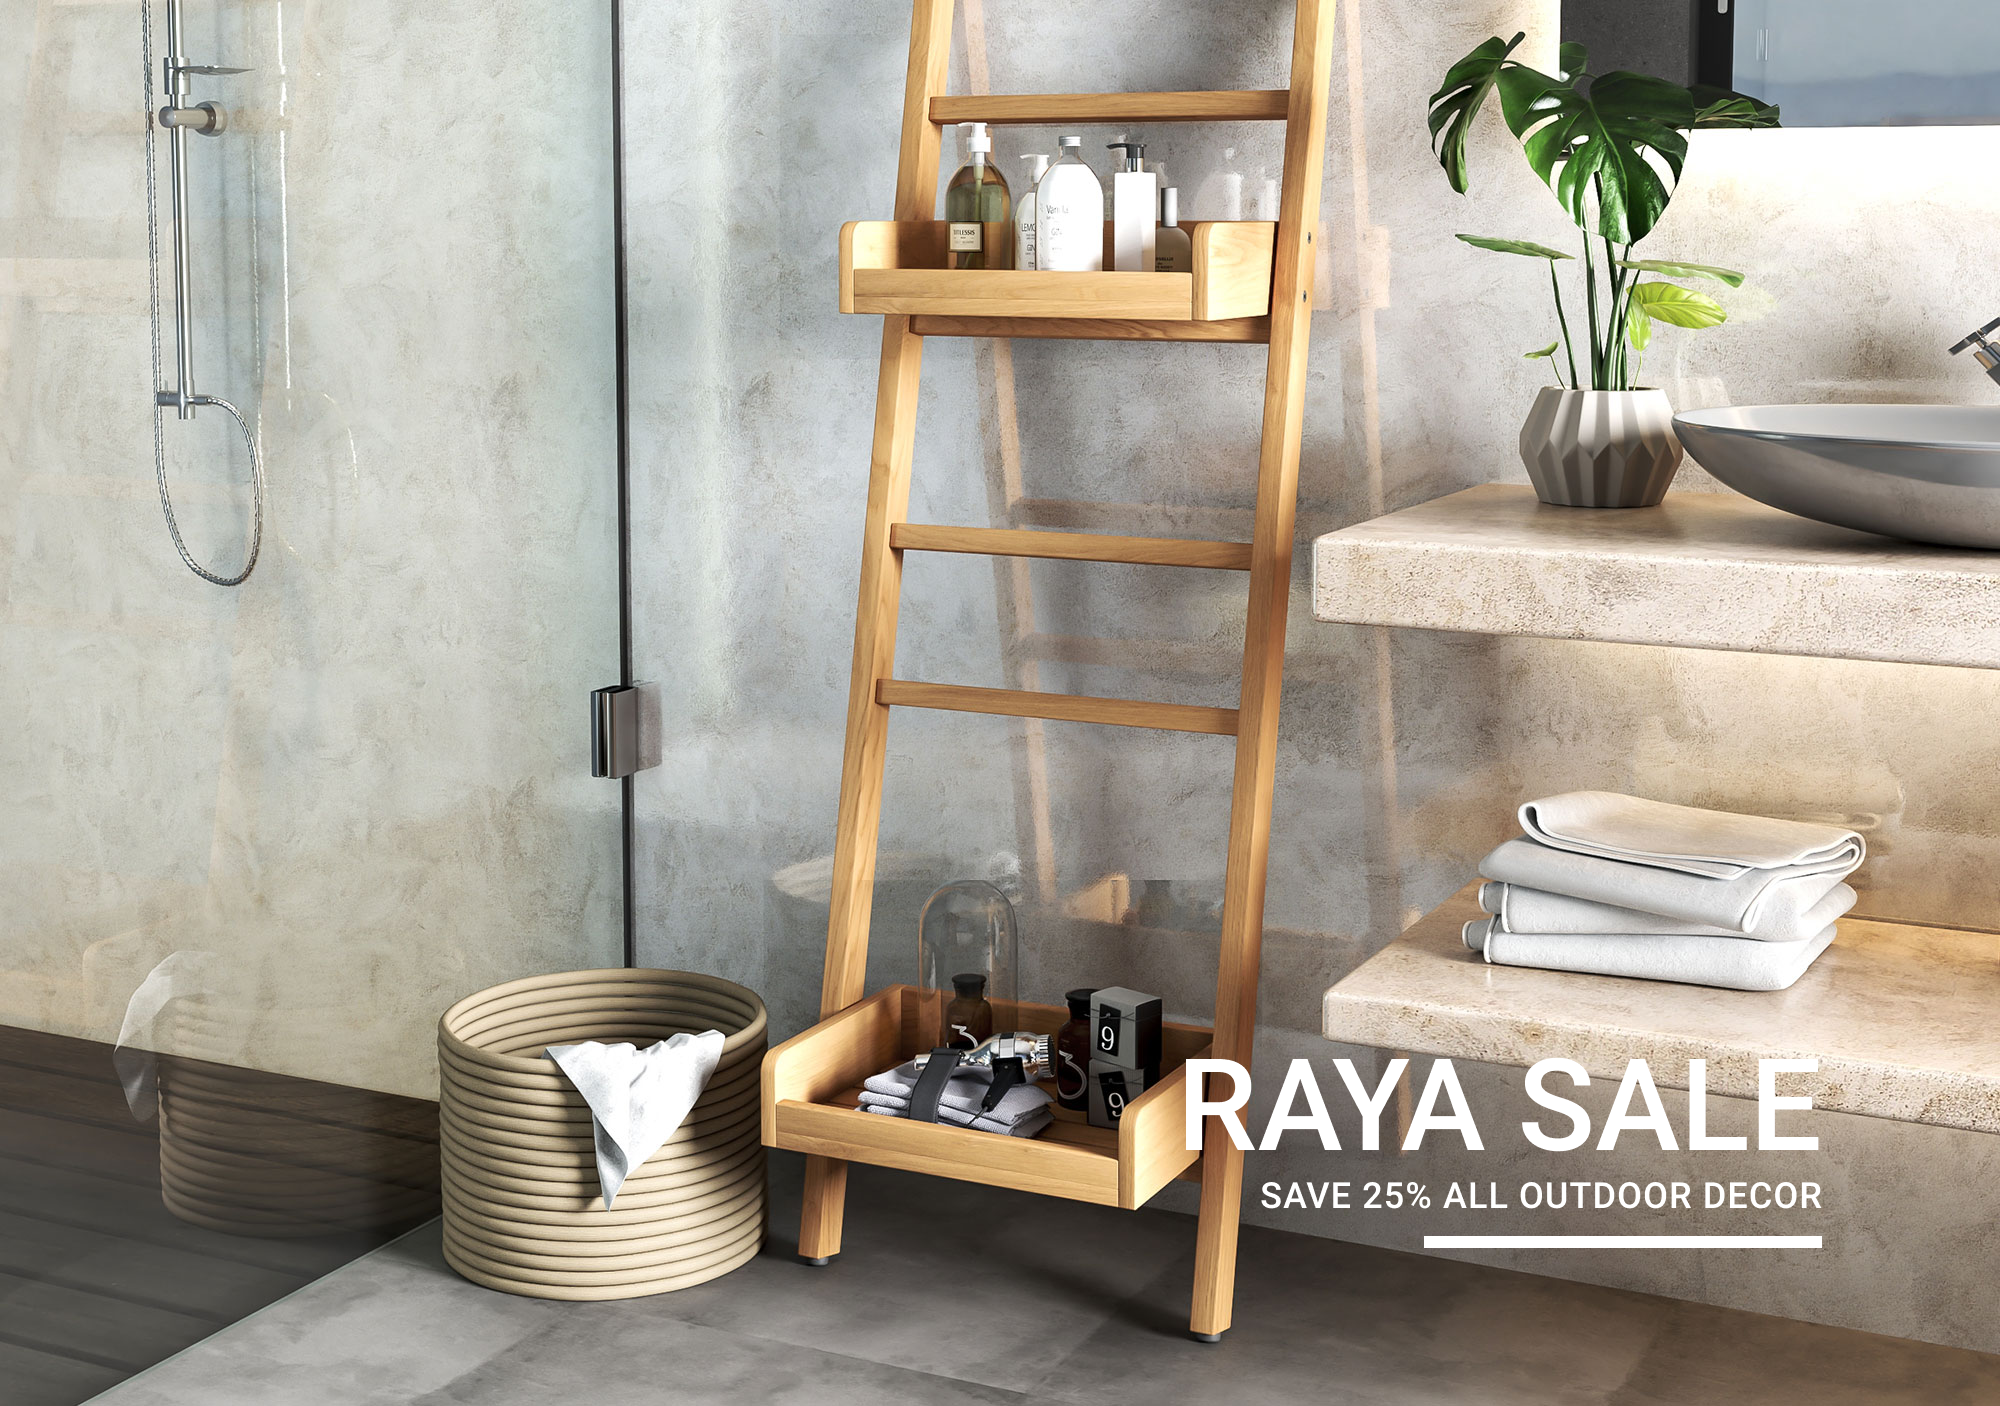 Raya Sale Bathroom Hd